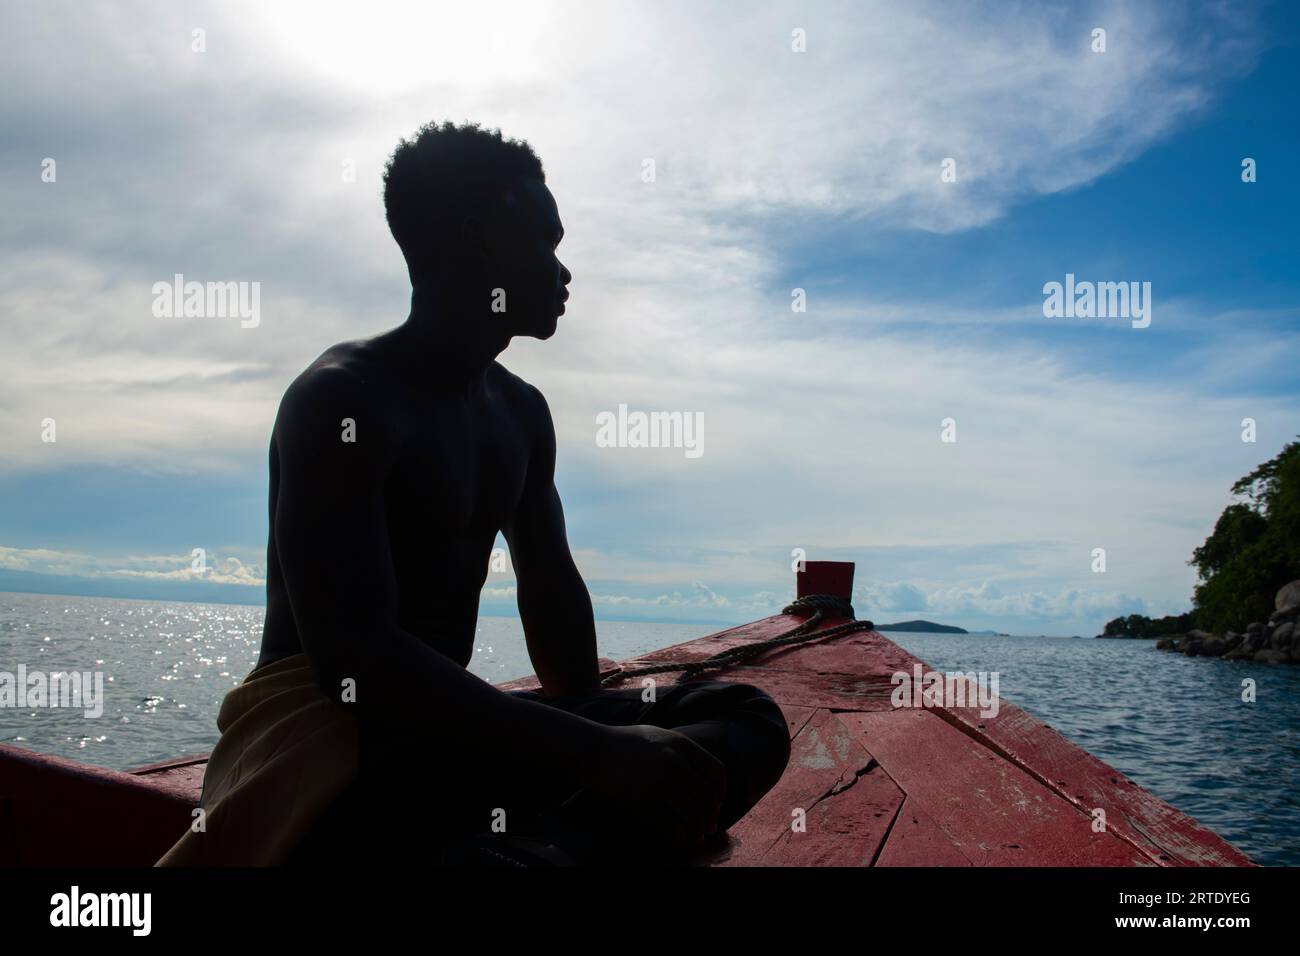 Cape Maclear, Malawi. Un istruttore di immersioni subacquee siede sulla prua di una barca. Solo per uso editoriale. Foto Stock